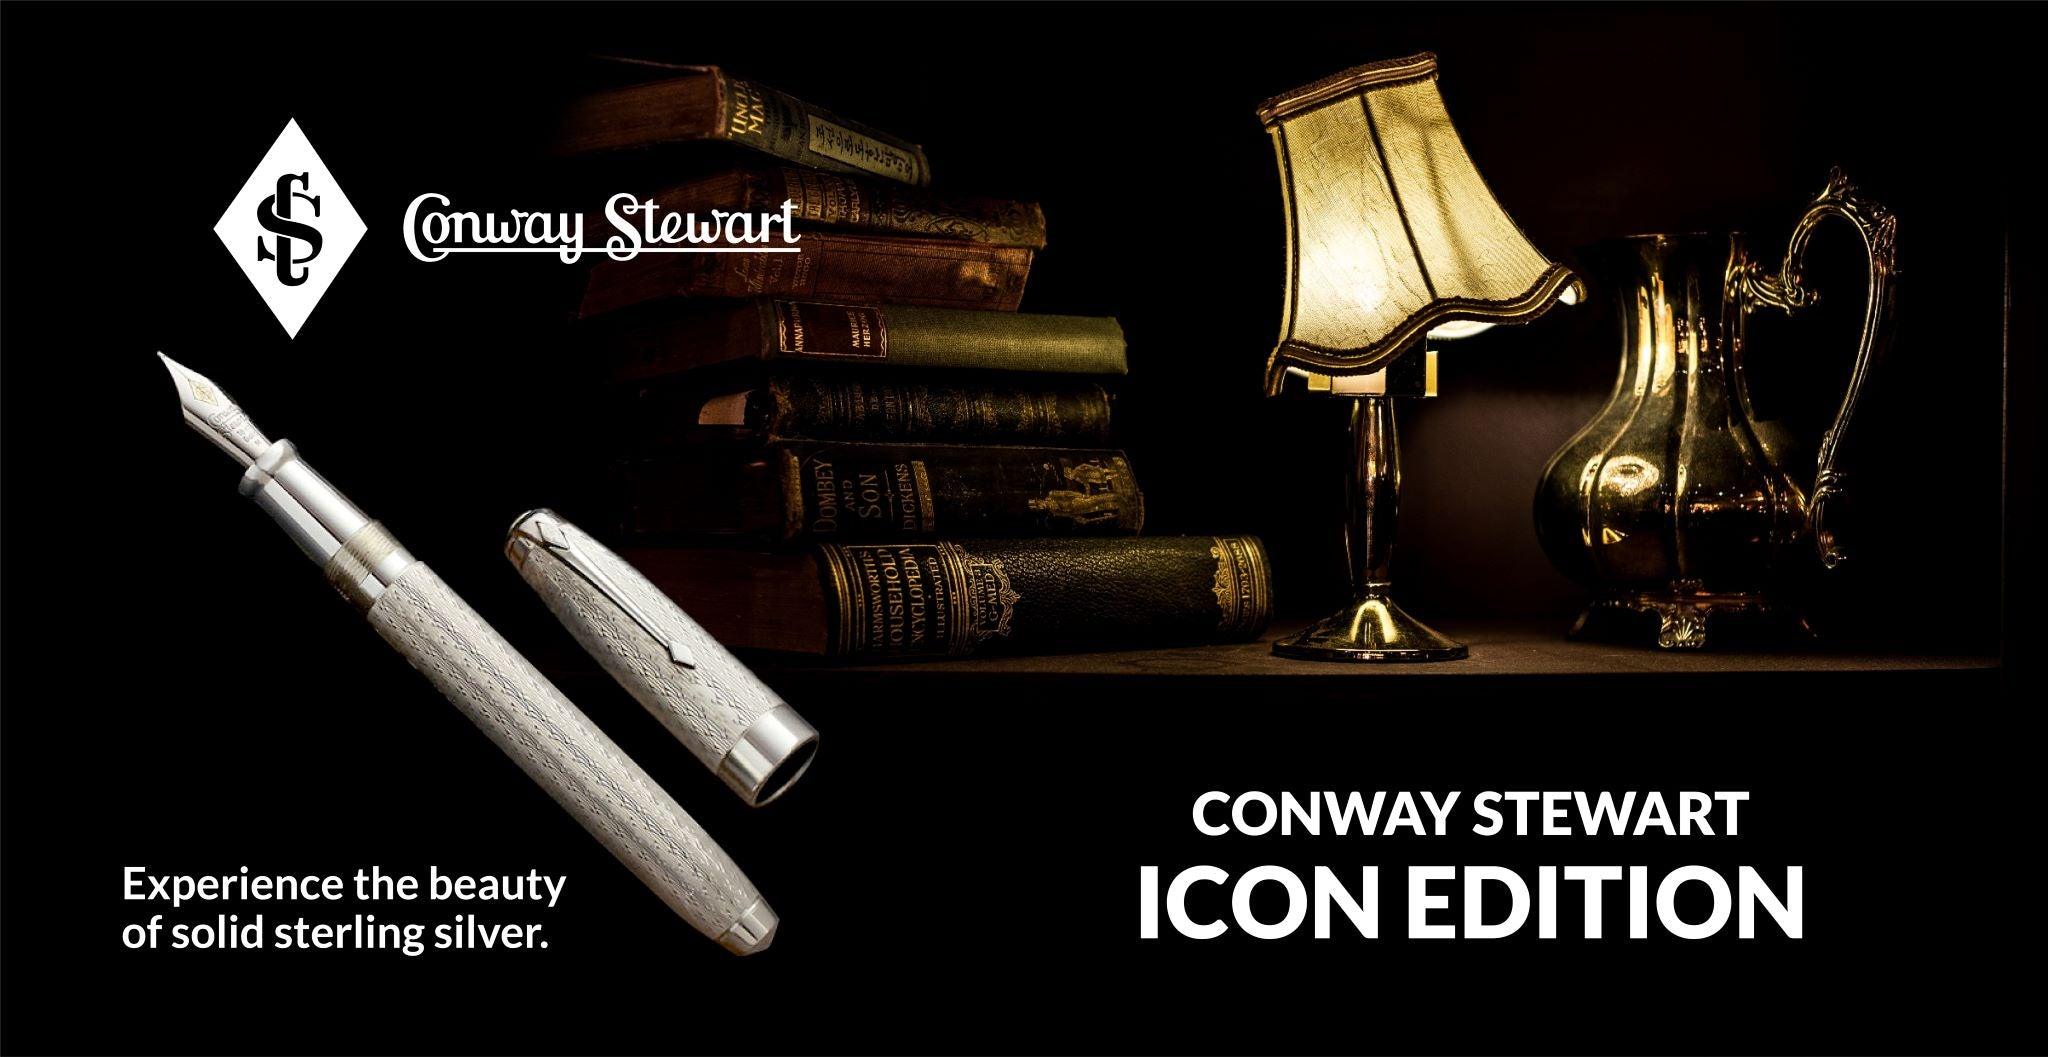 Conway Stewart Icon Edition, 2007 - Conway Stewart